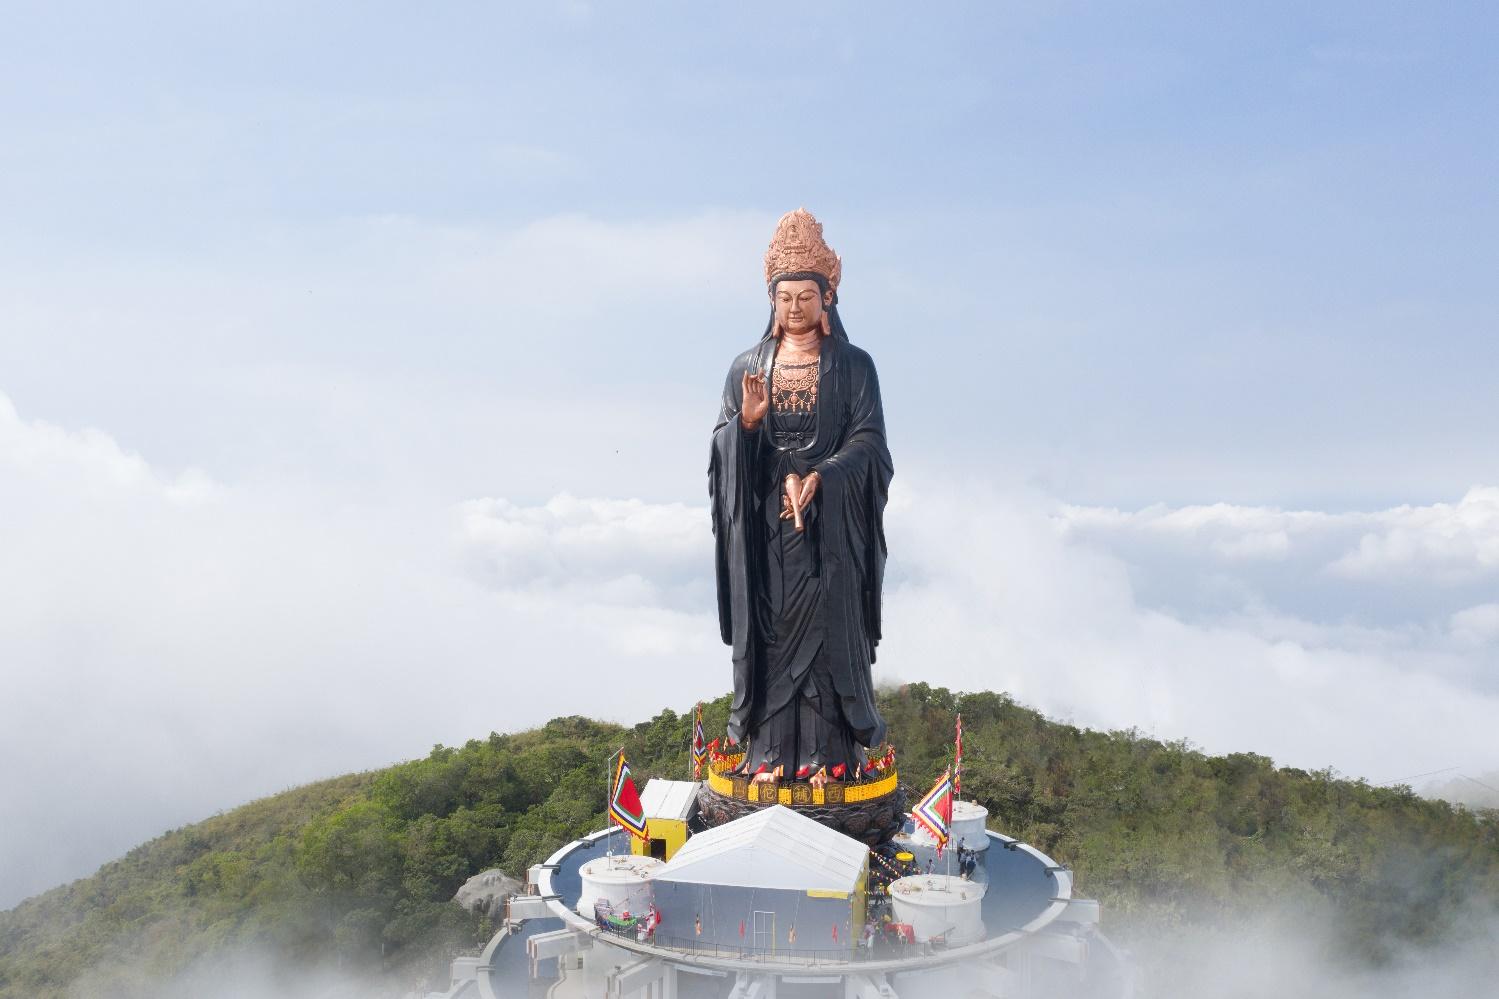 Khám phá ượng Phật Bà bằng đồng cao nhất Châu Á trên đỉnh Bà Đen - 3